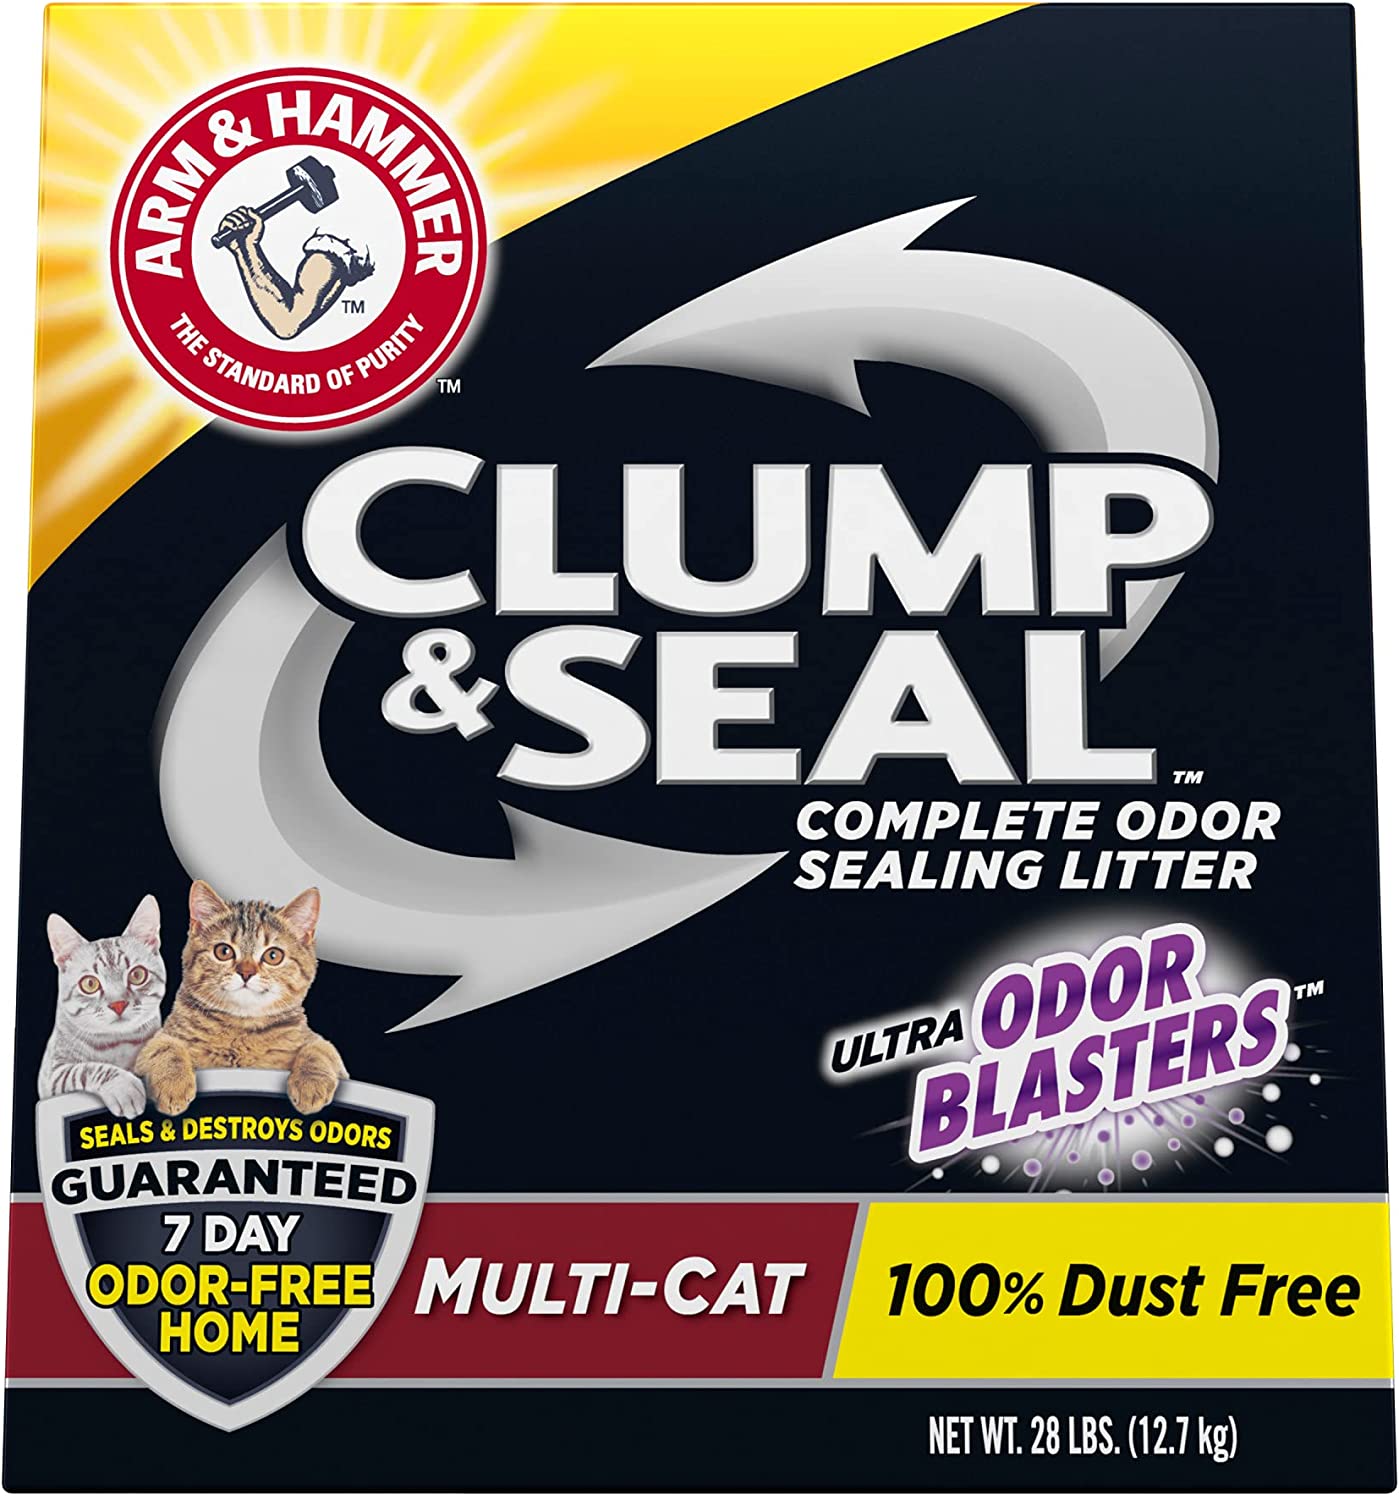 5. Arm & Hammer Clump & Seal Platinum Cat Litter